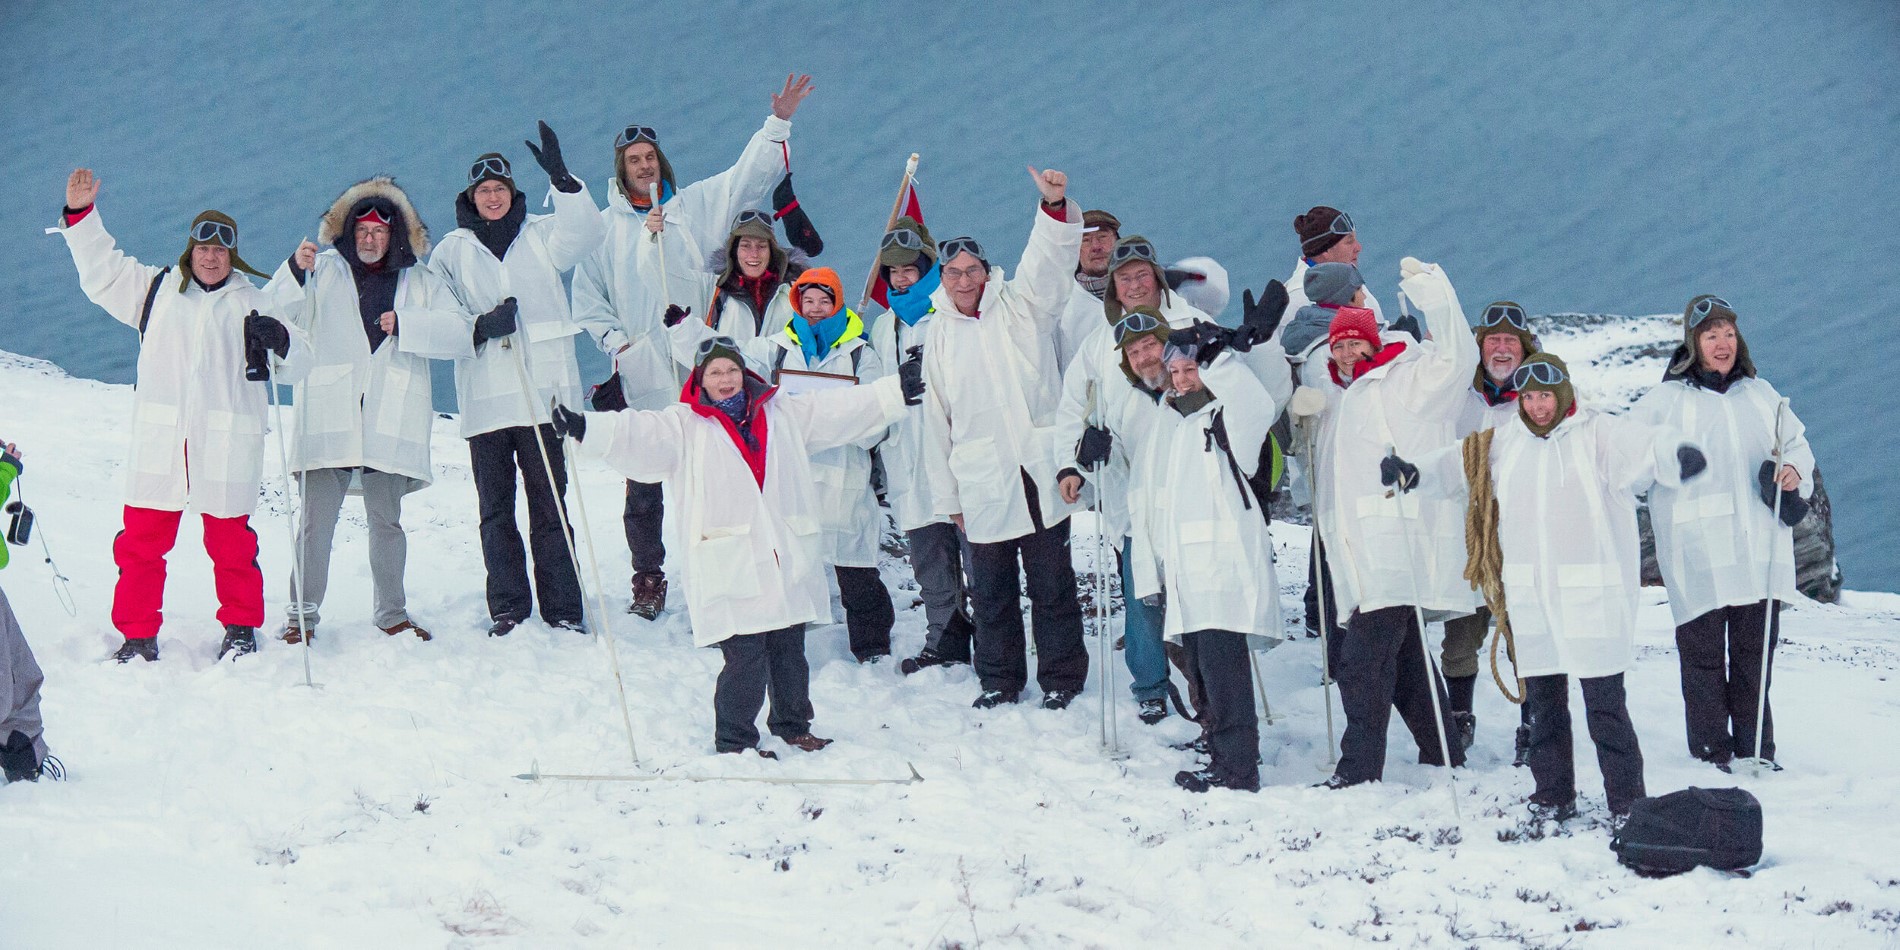 En grupp människor som poserar för en bild i snön